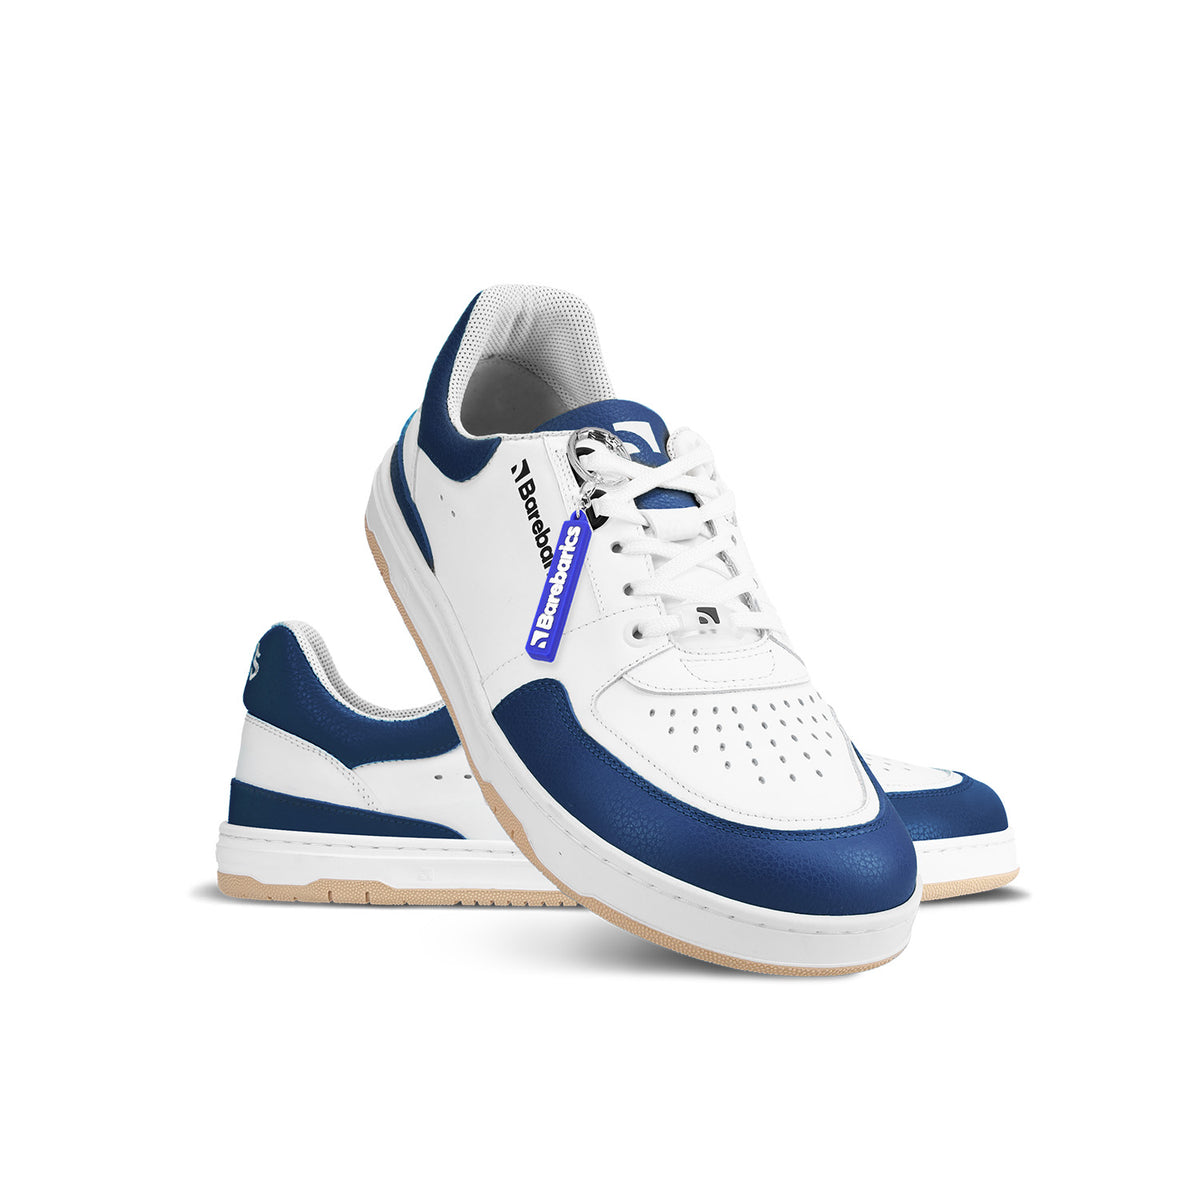 Barefoot Sneakers Barebarics Wave - White & Dark Blue 2  - OzBarefoot